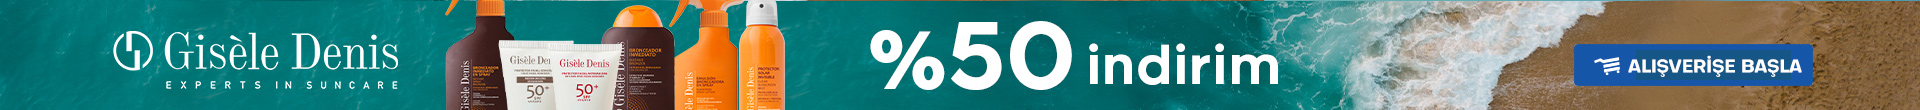 Gisele Denis Güneş ürünlerinde %50 indirim